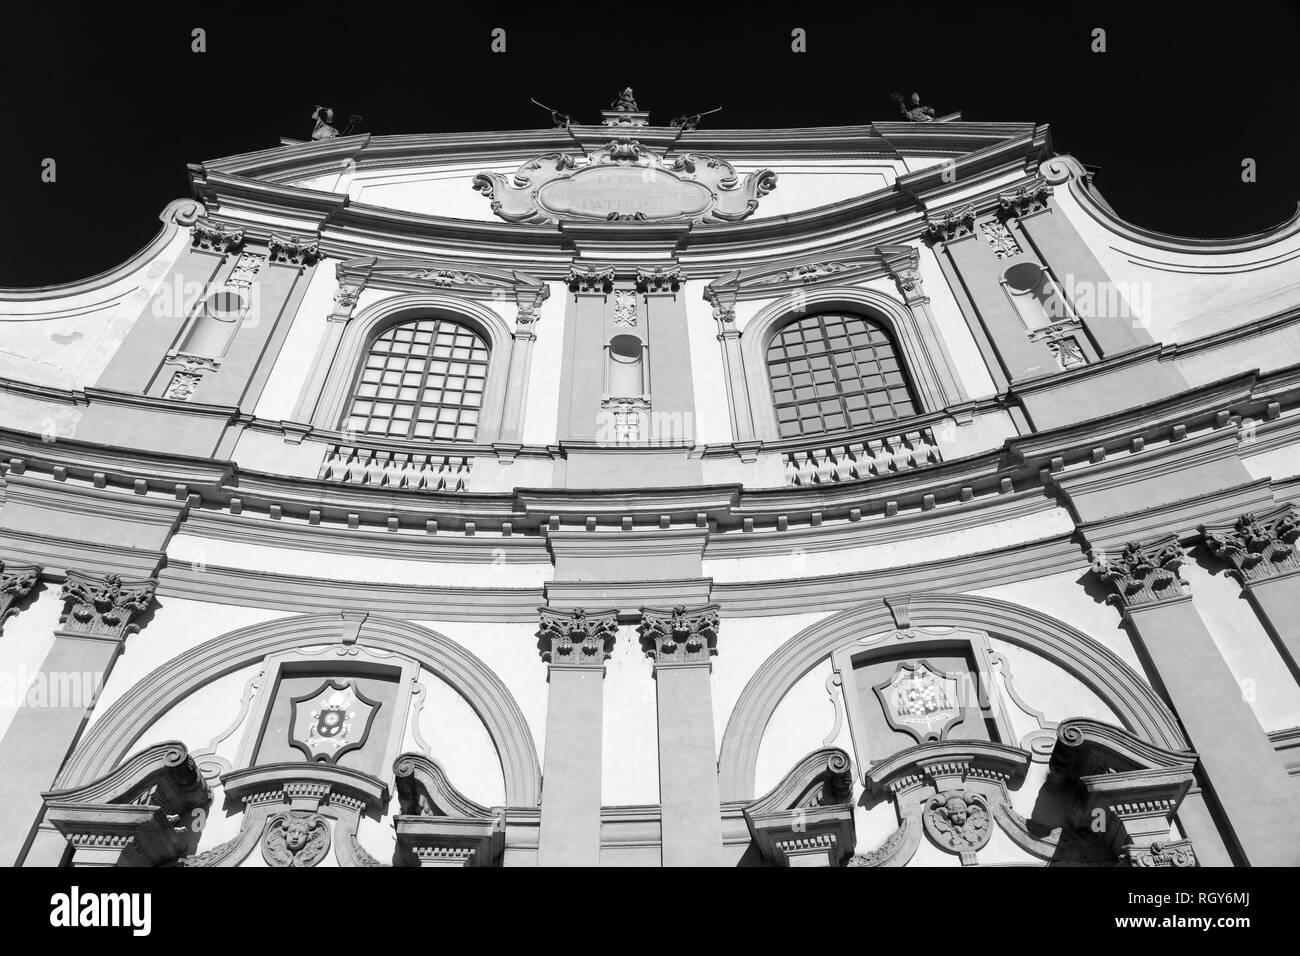 A Vigevano e Pavia, Lombardia, Italia: la storica piazza principale della città, conosciuta come Piazza Ducale. In bianco e nero Foto Stock